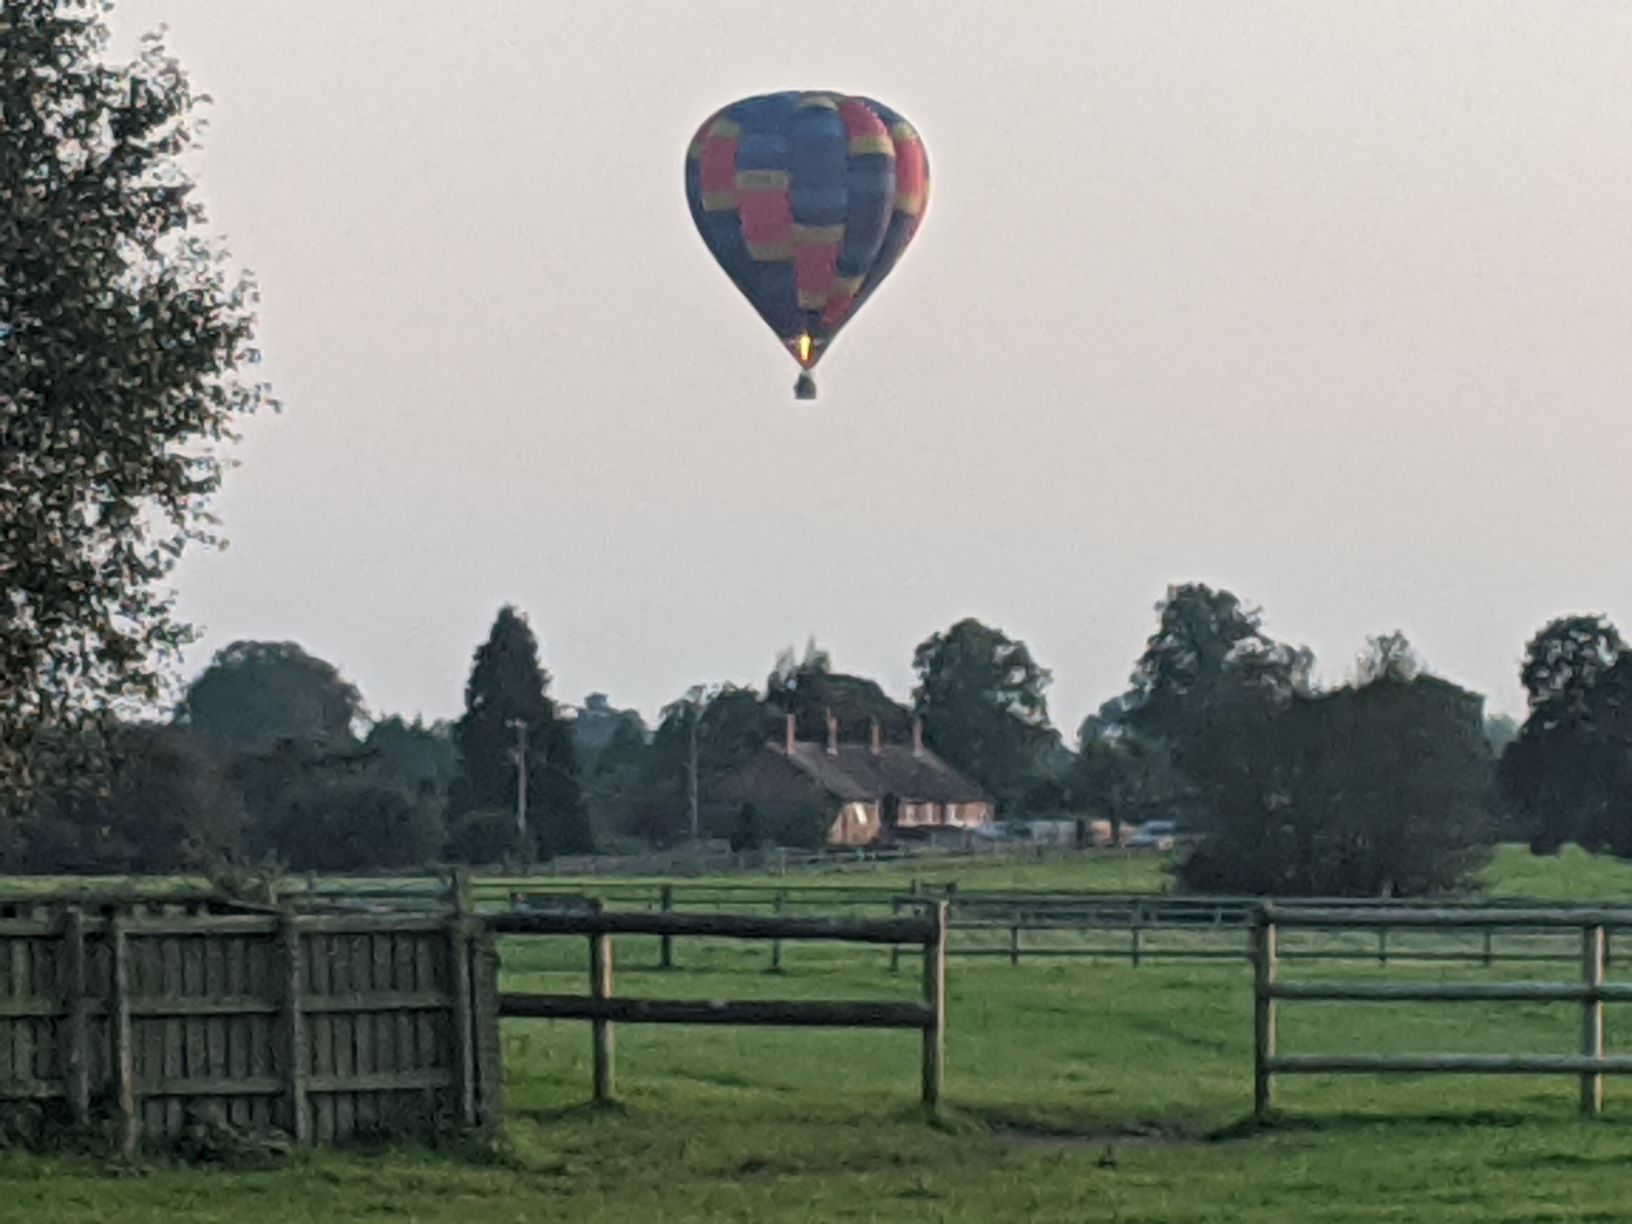 Hot air balloon landing near Corbrook, September 21st